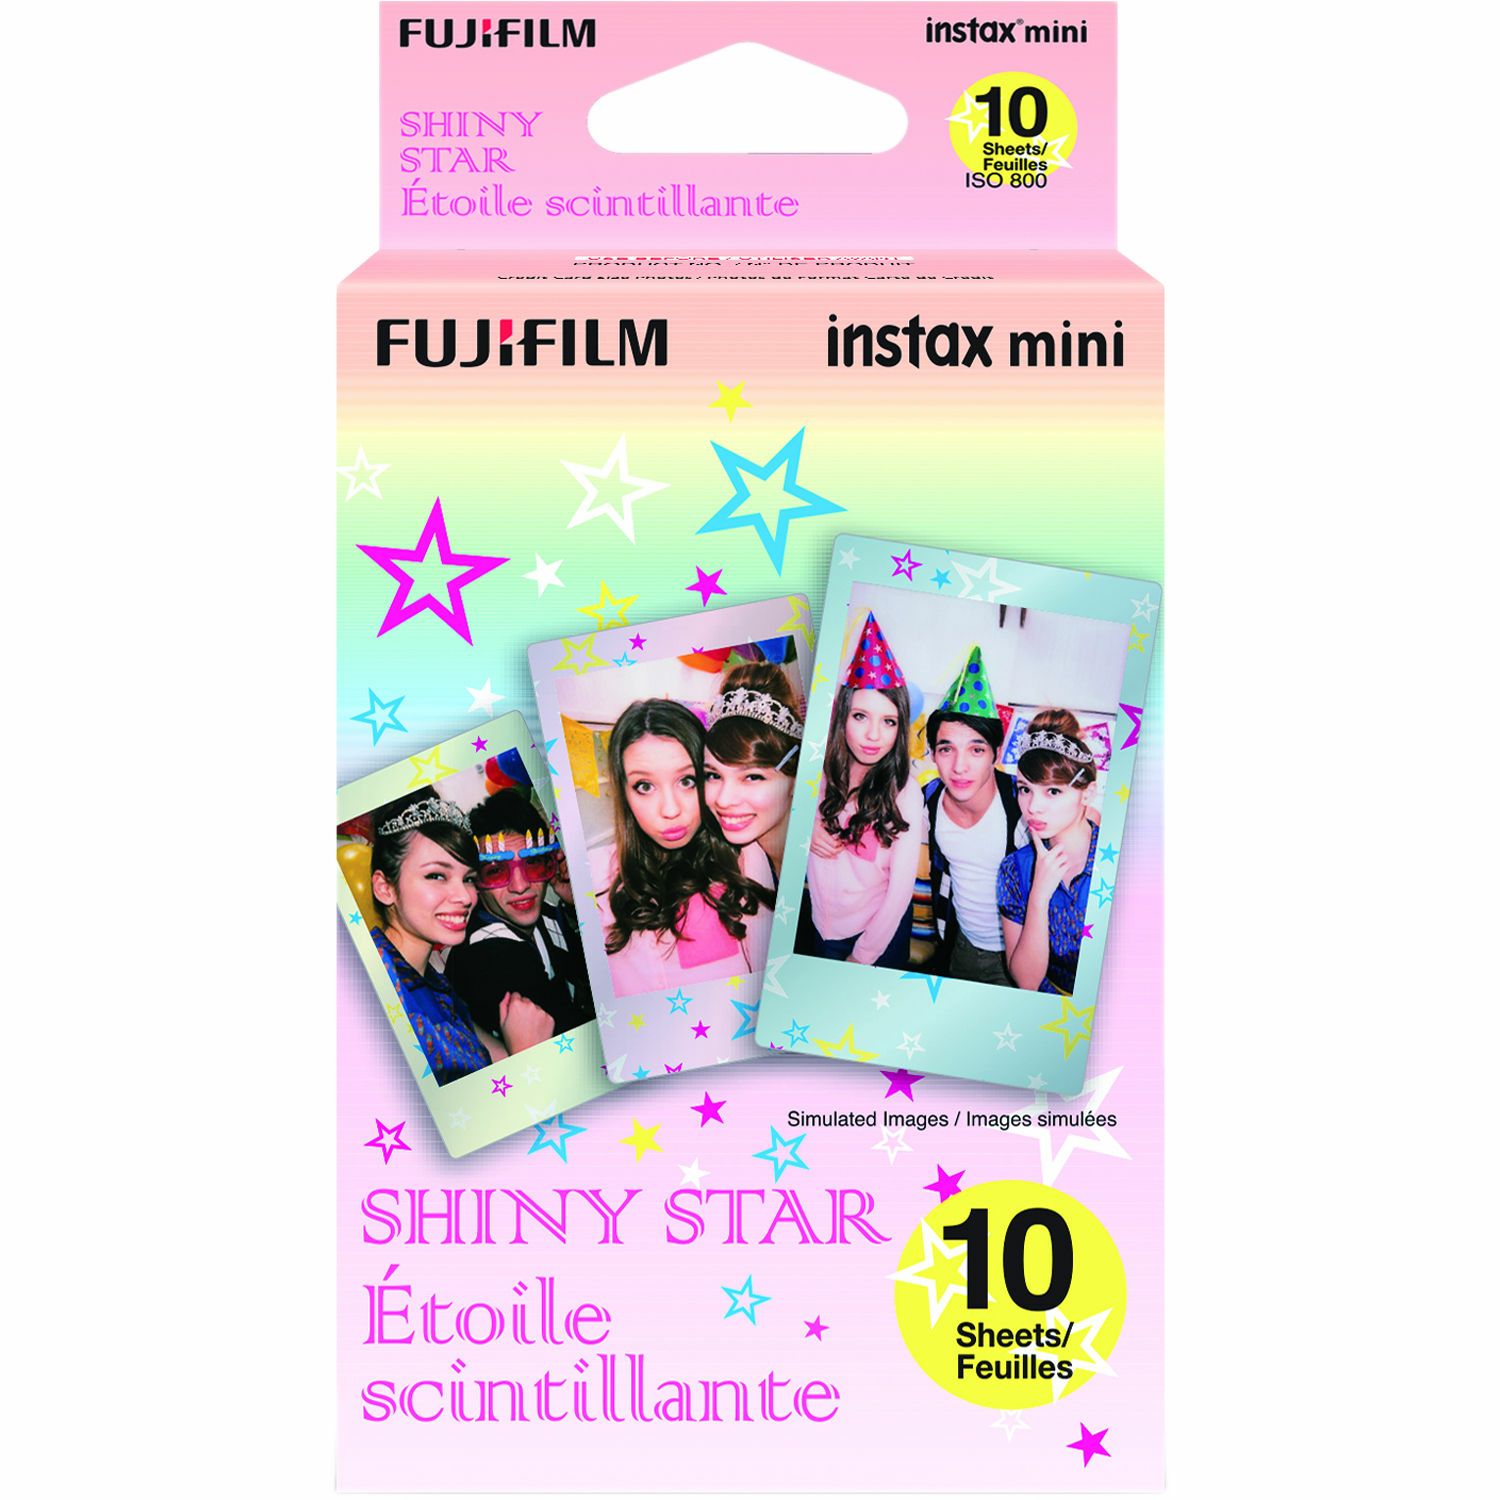 Fujifilm Instax Mini Film Shiny Star foto papir 10 listova (1x10) za Fuji instant polaroidni fotoaparat